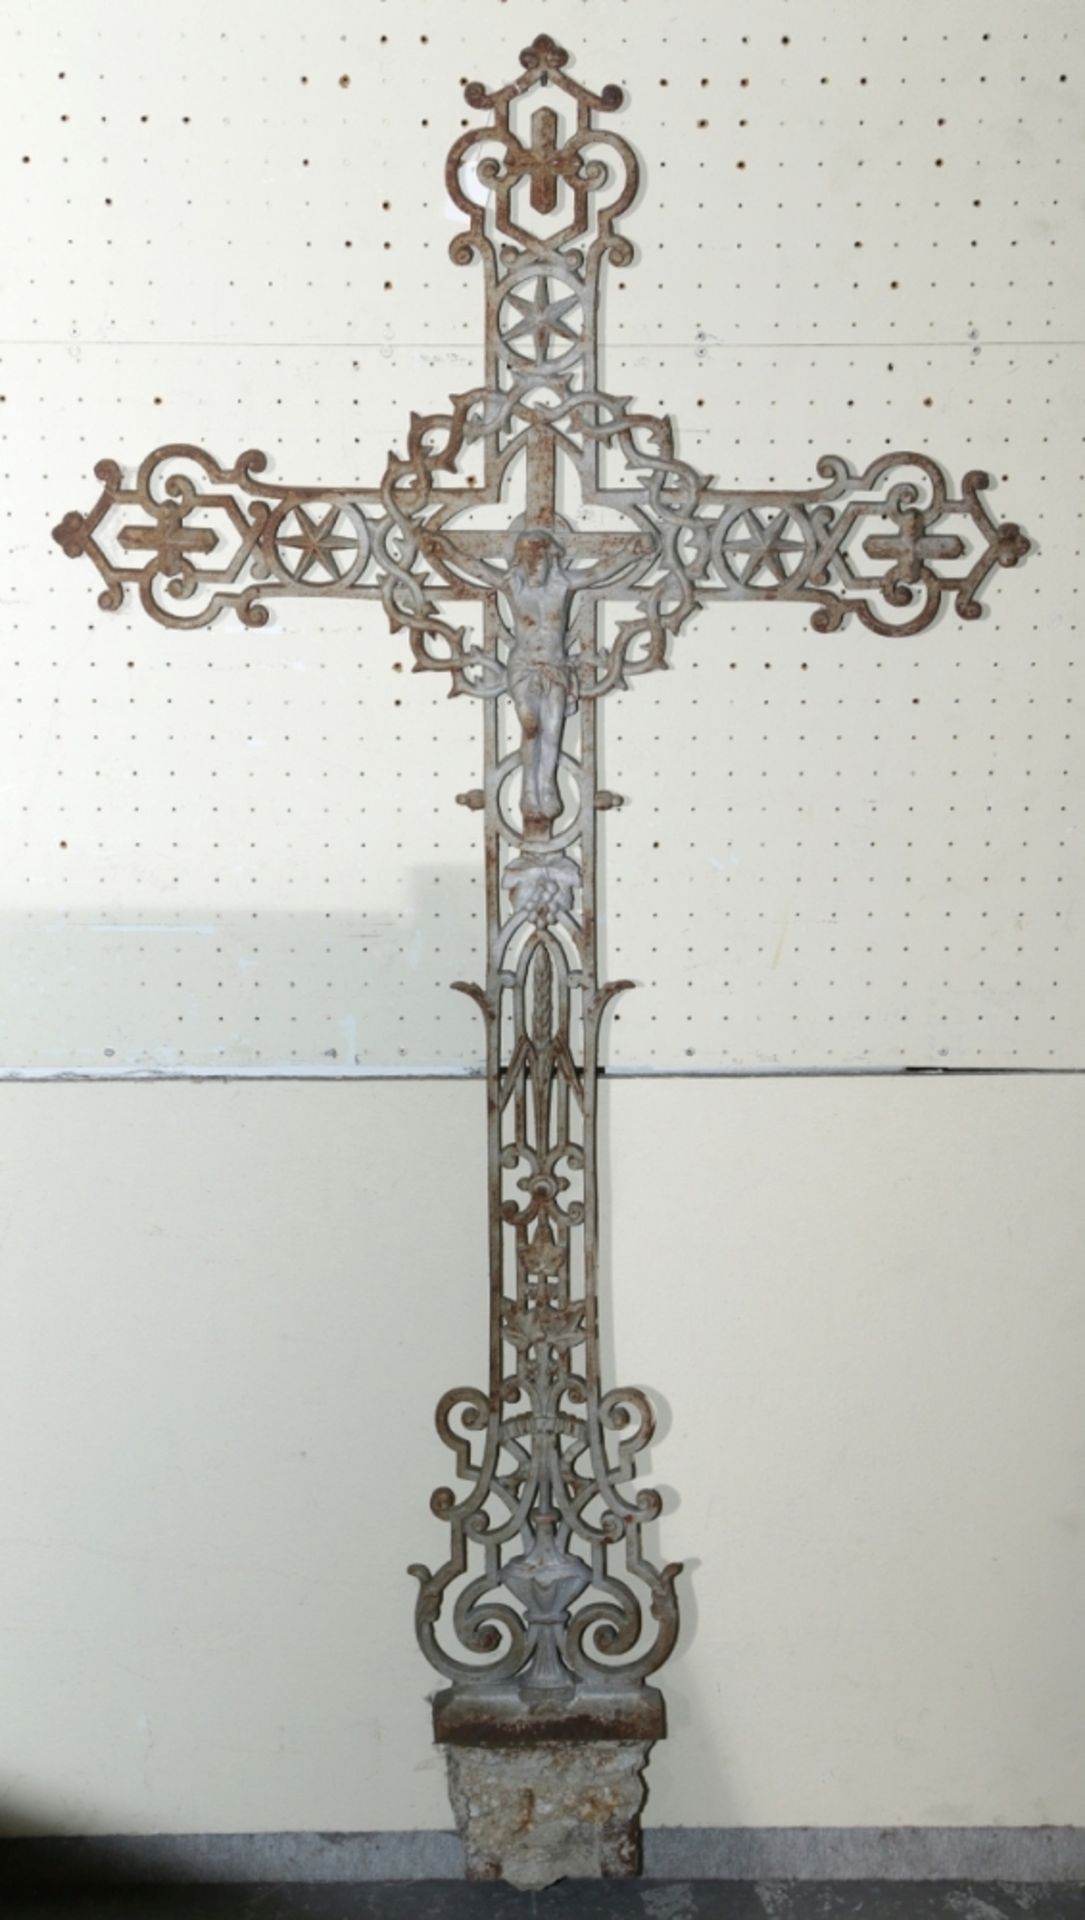 Gusseisen-Kreuz, Frankreich, 19. Jh., durchbrochen gearbeitet, Reste von grauer Patina, H119 cm